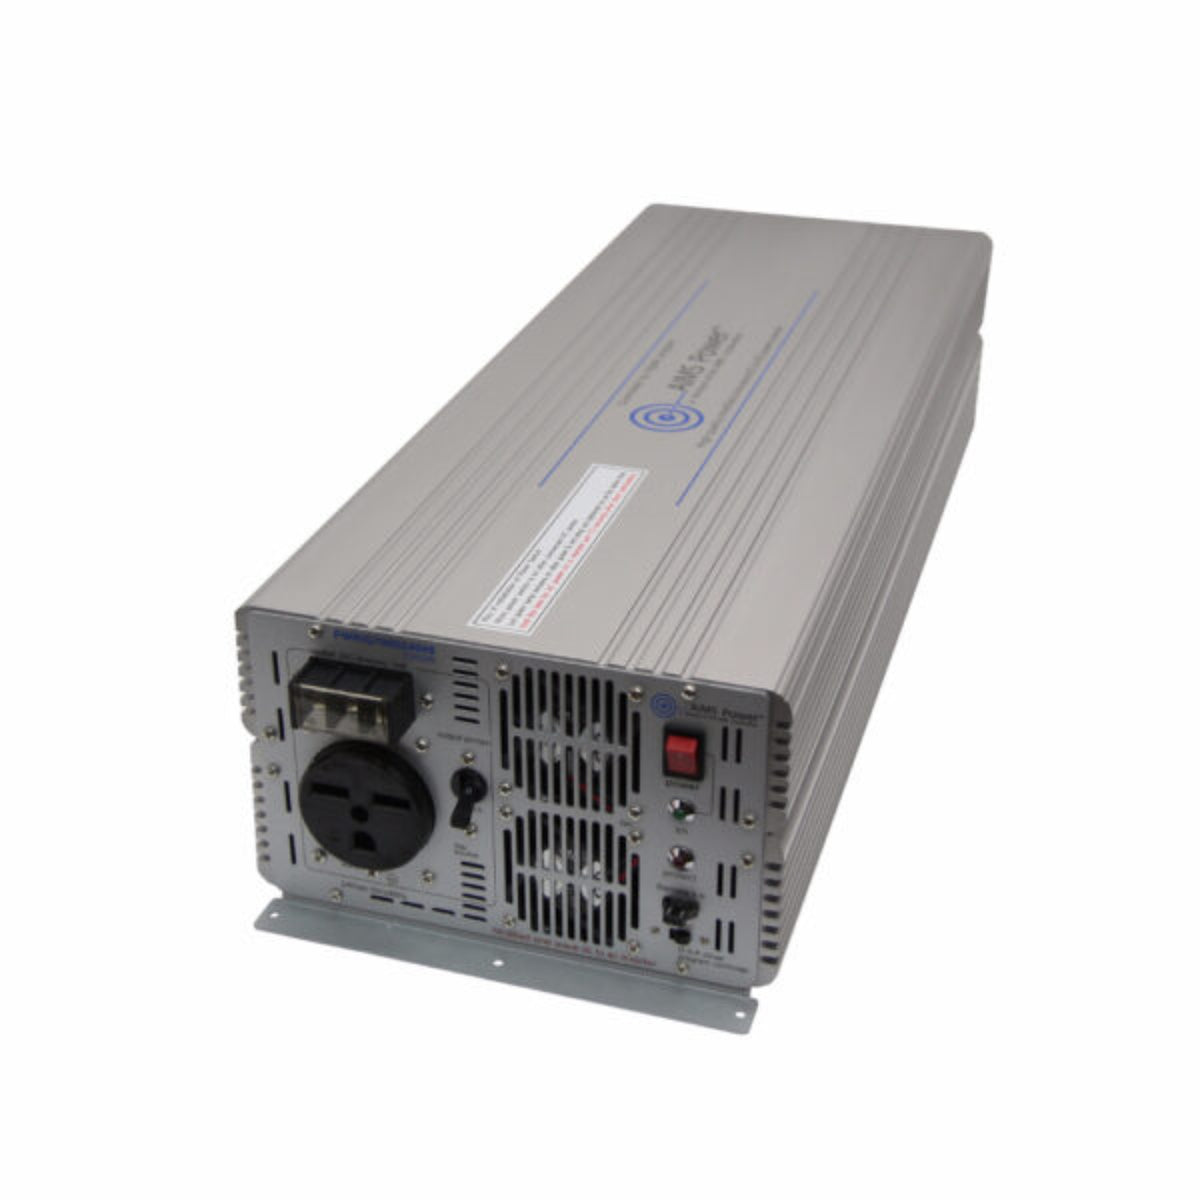 AIMS Power | 7000 Watt Power Inverter | 48Vdc to 240Vac Industrial Grade 50/60 hz